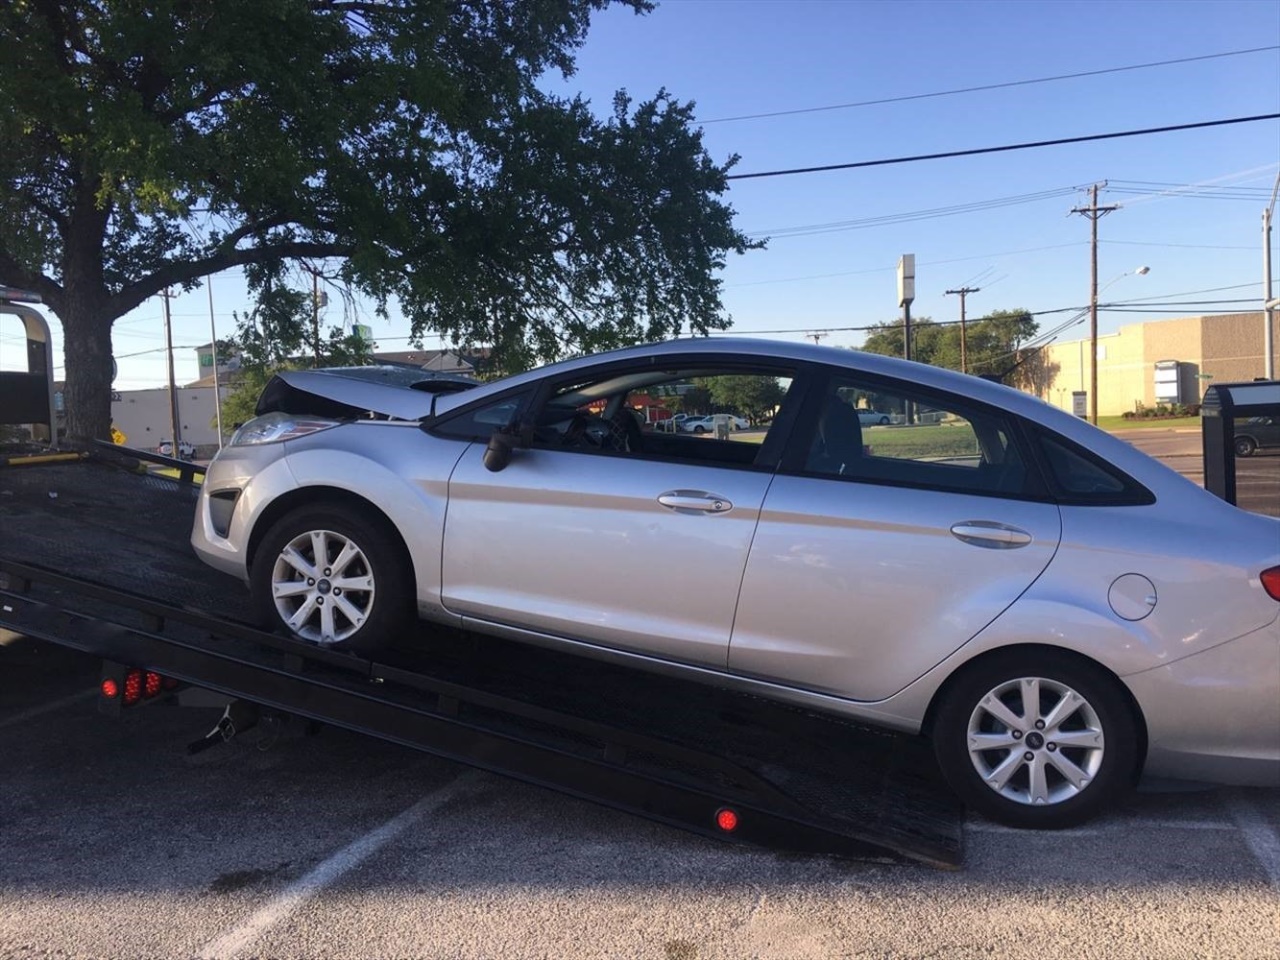 Junk Car Pick Up Irving TX